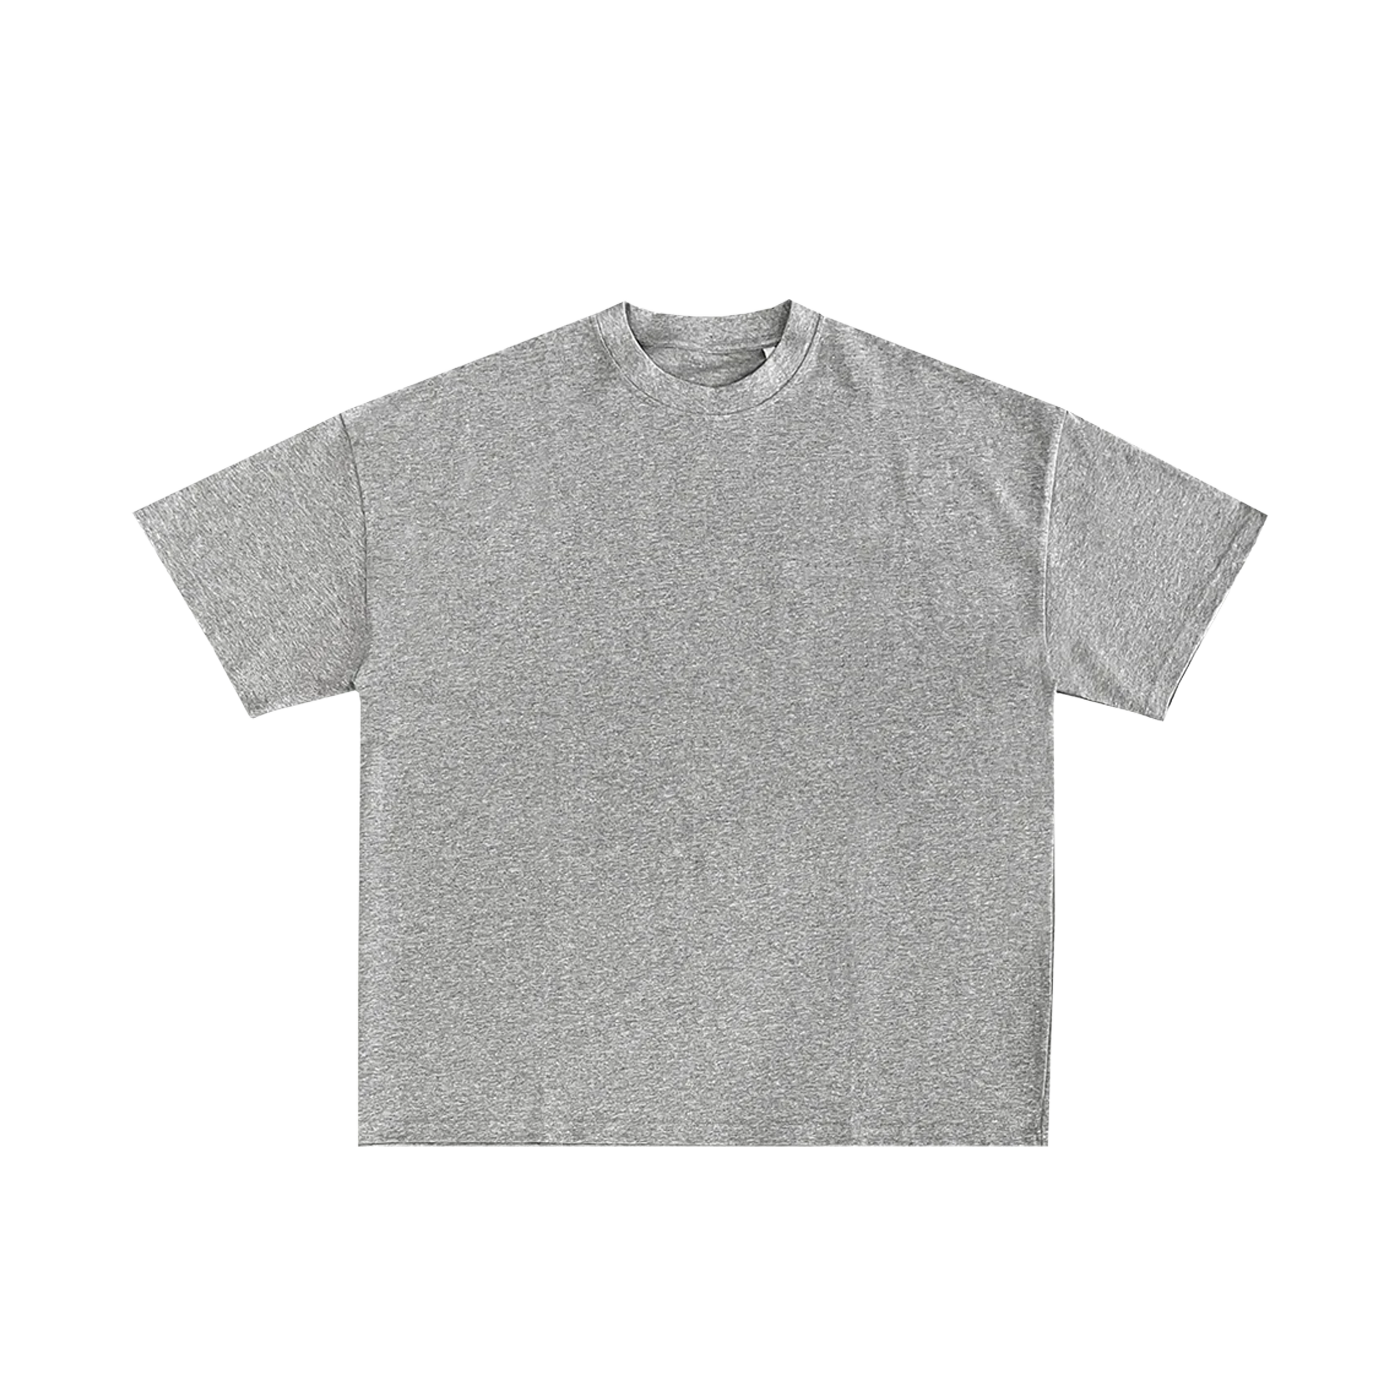 "T-shirt gris à coupe classique en coton, parfait pour la personnalisation via broderie ou impression sur prynt.shop."